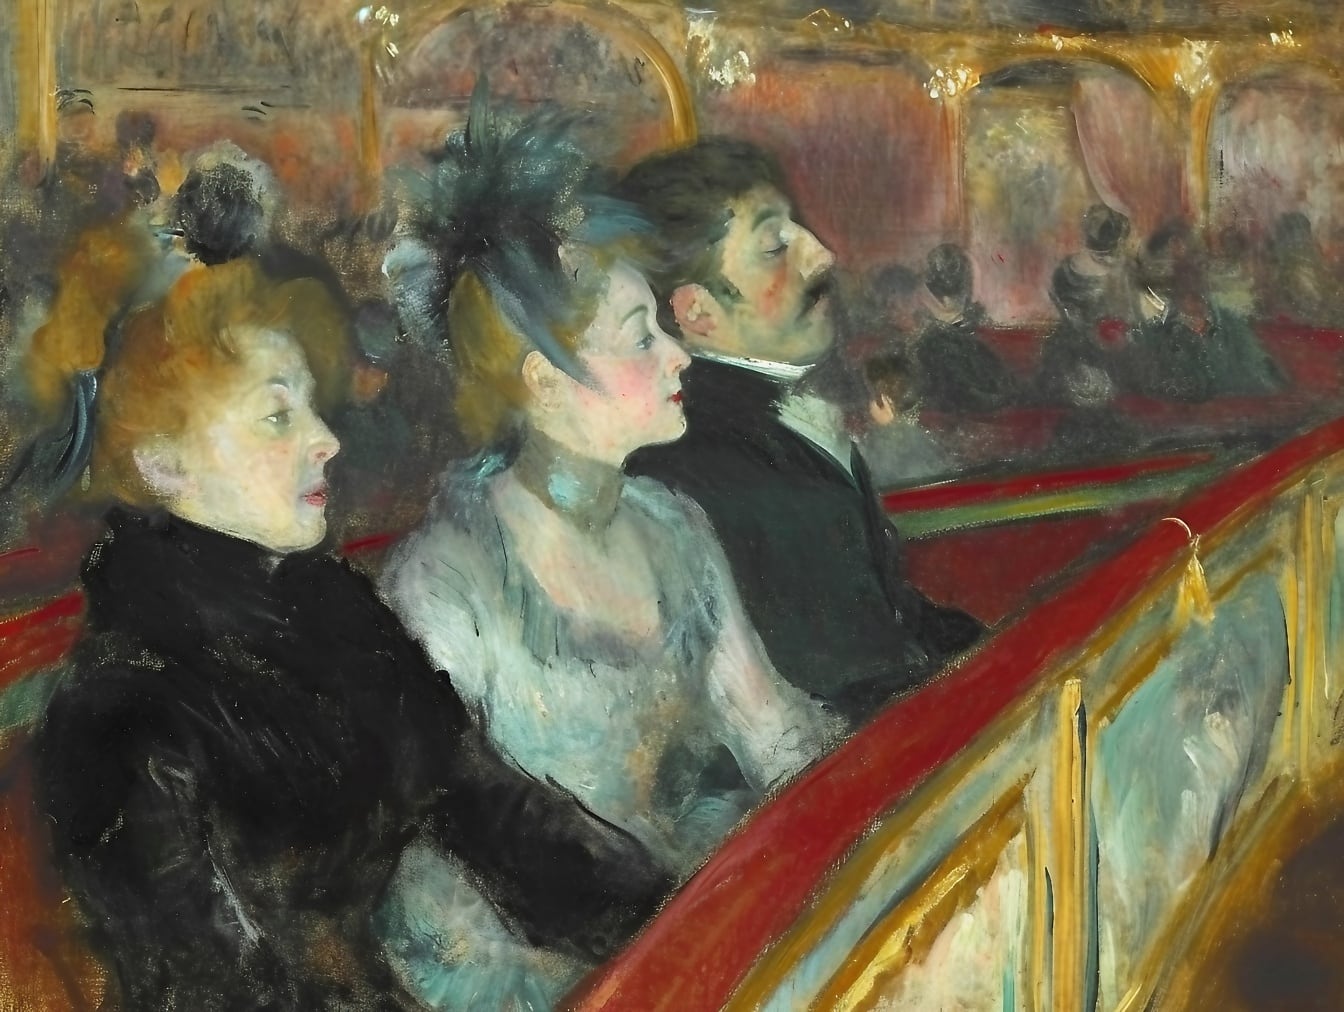 Öljymaalaus ihmisryhmästä, joka istuu teatterin ensimmäisellä rivillä, joka kuvaa 19-luvun tunnelmaa